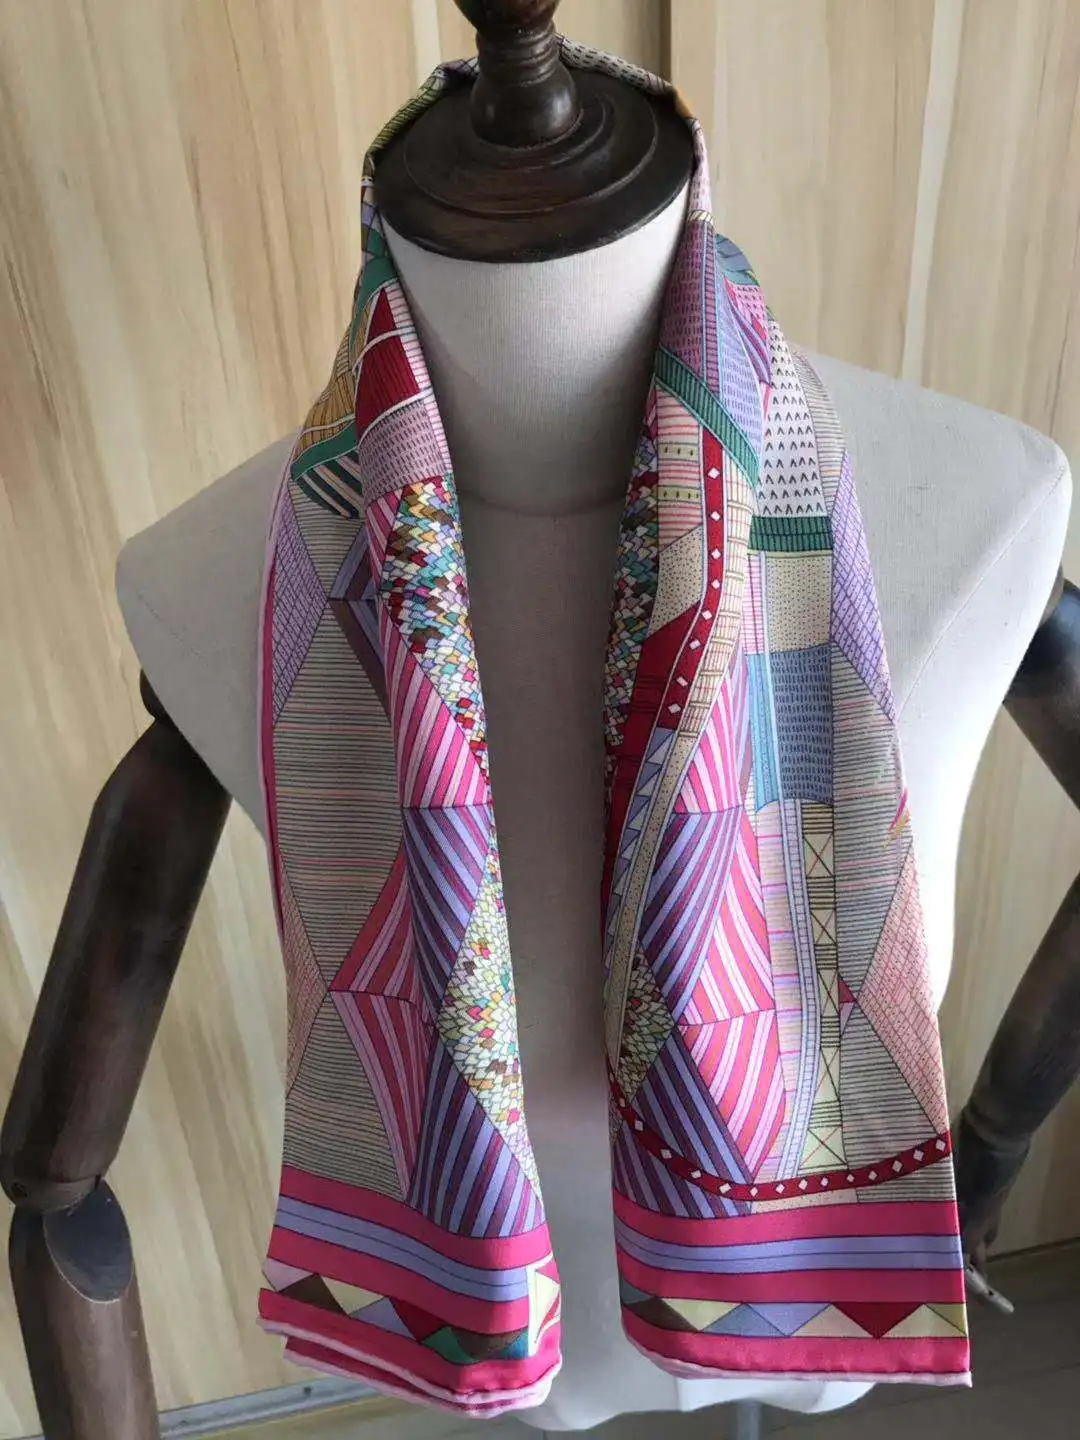 

2021 Новое поступление модный элегантный брендовый розовый шарф из 100% шелка 90*90 см квадратная шаль саржевая накидка для женщин и девушек